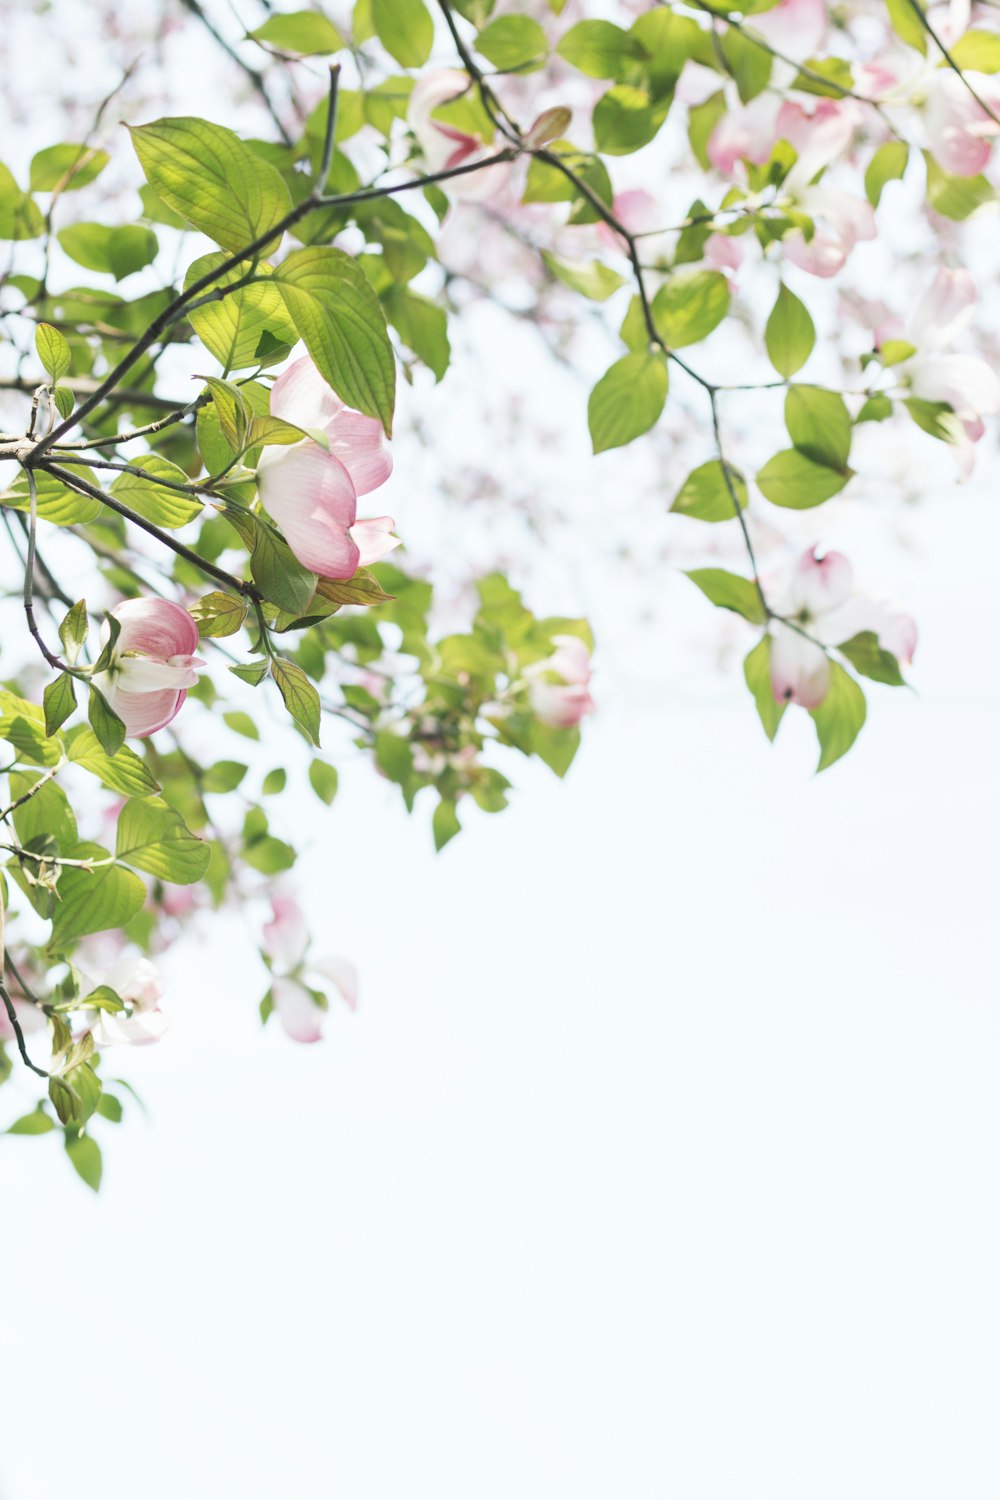 Fotografia de foco raso da árvore com flores cor-de-rosa